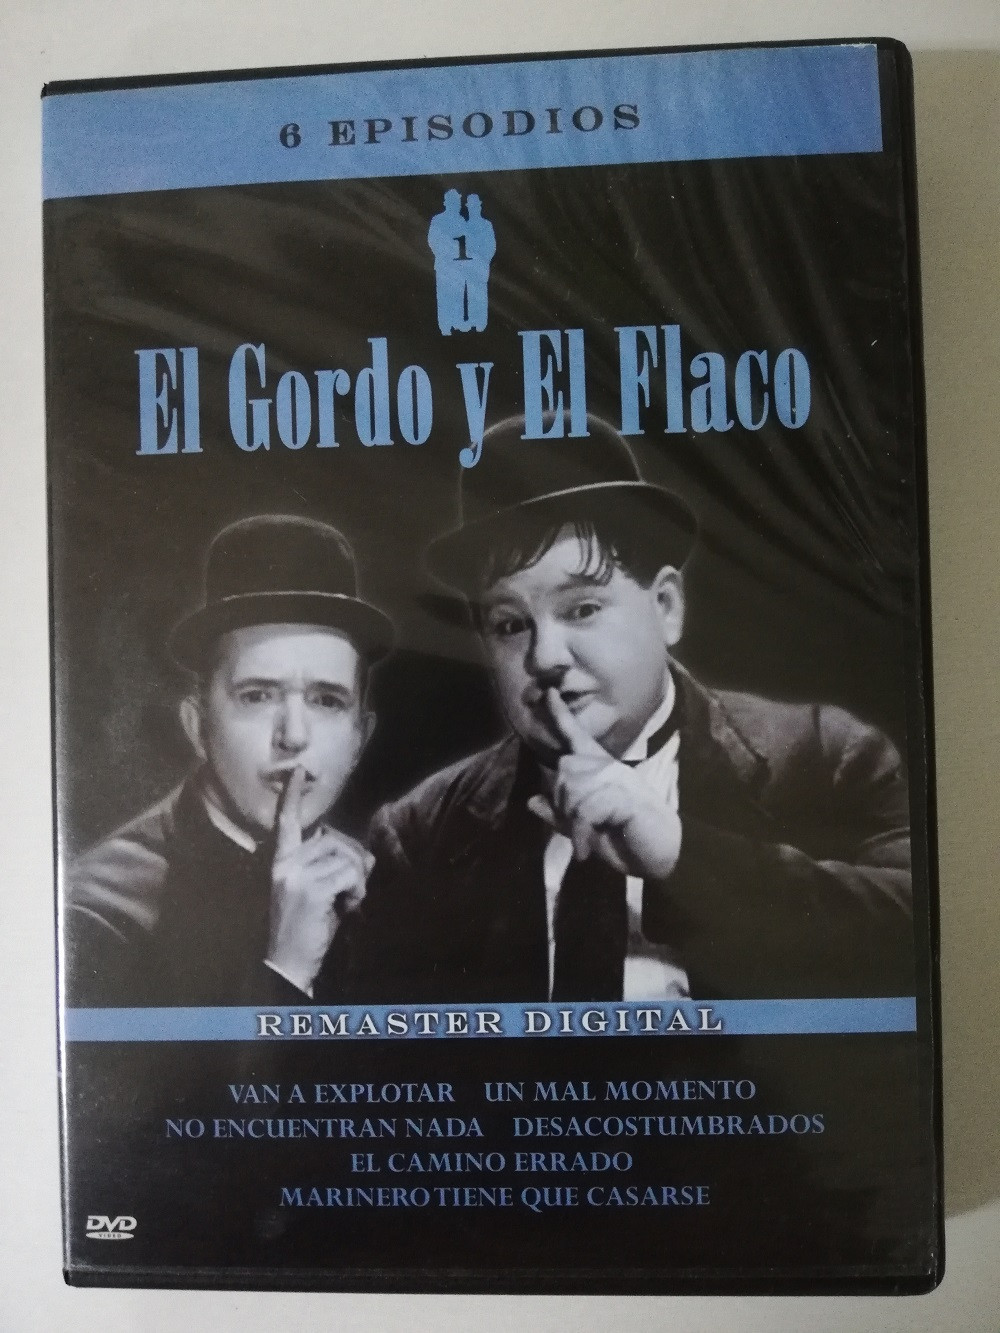 Imagen DVD X 2 EL GORDO Y EL FLACO - 6 EPISODIOS 1